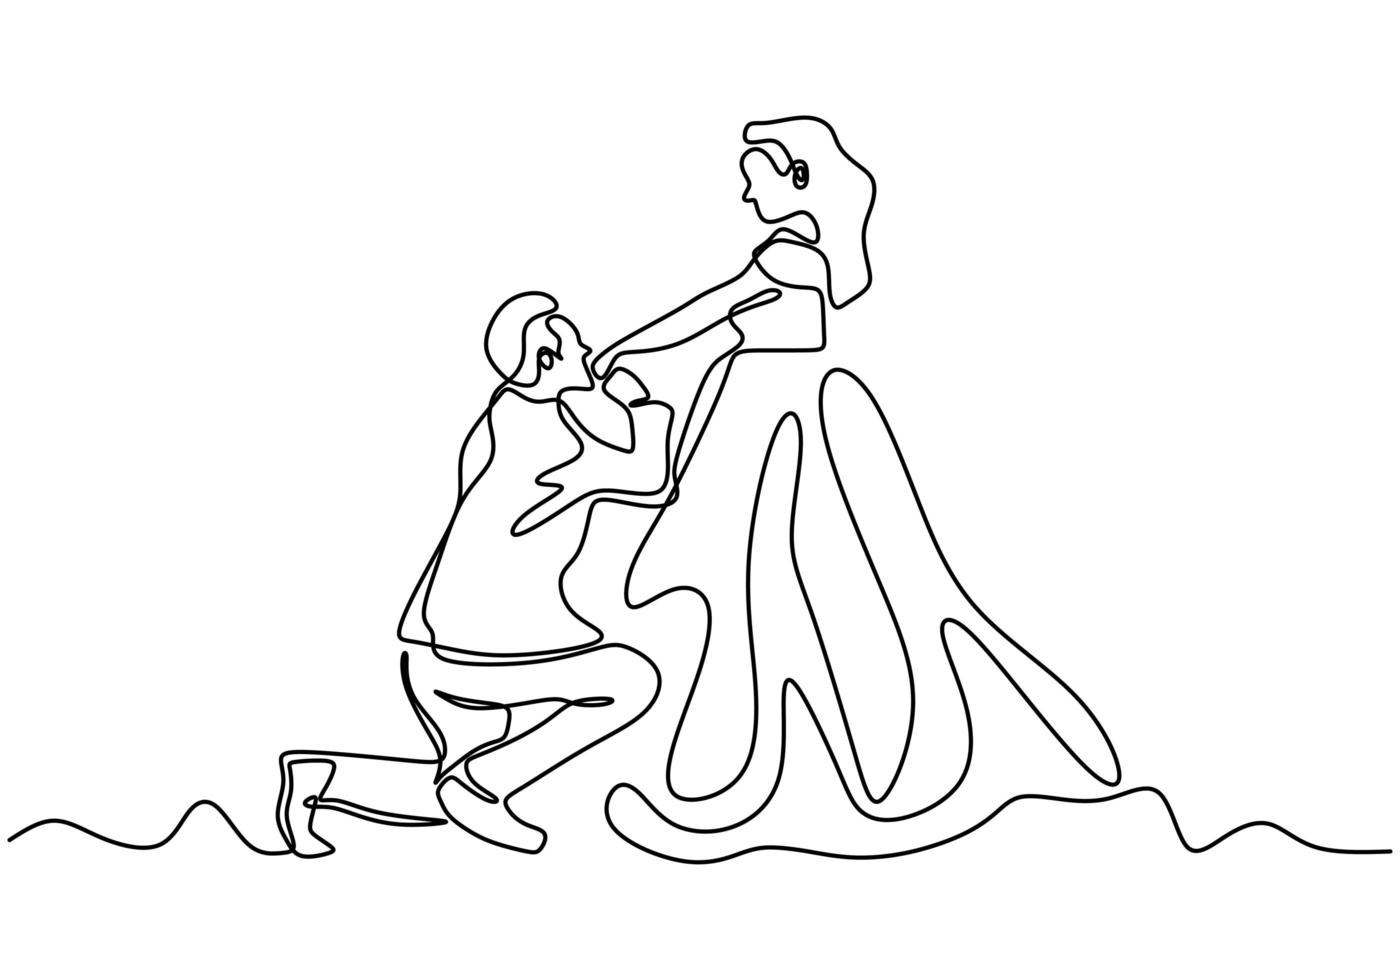 disegno in linea continua. coppia romantica, un uomo bacia una mano di donna, proponendo per il matrimonio. minimalismo disegnato a mano. vettore